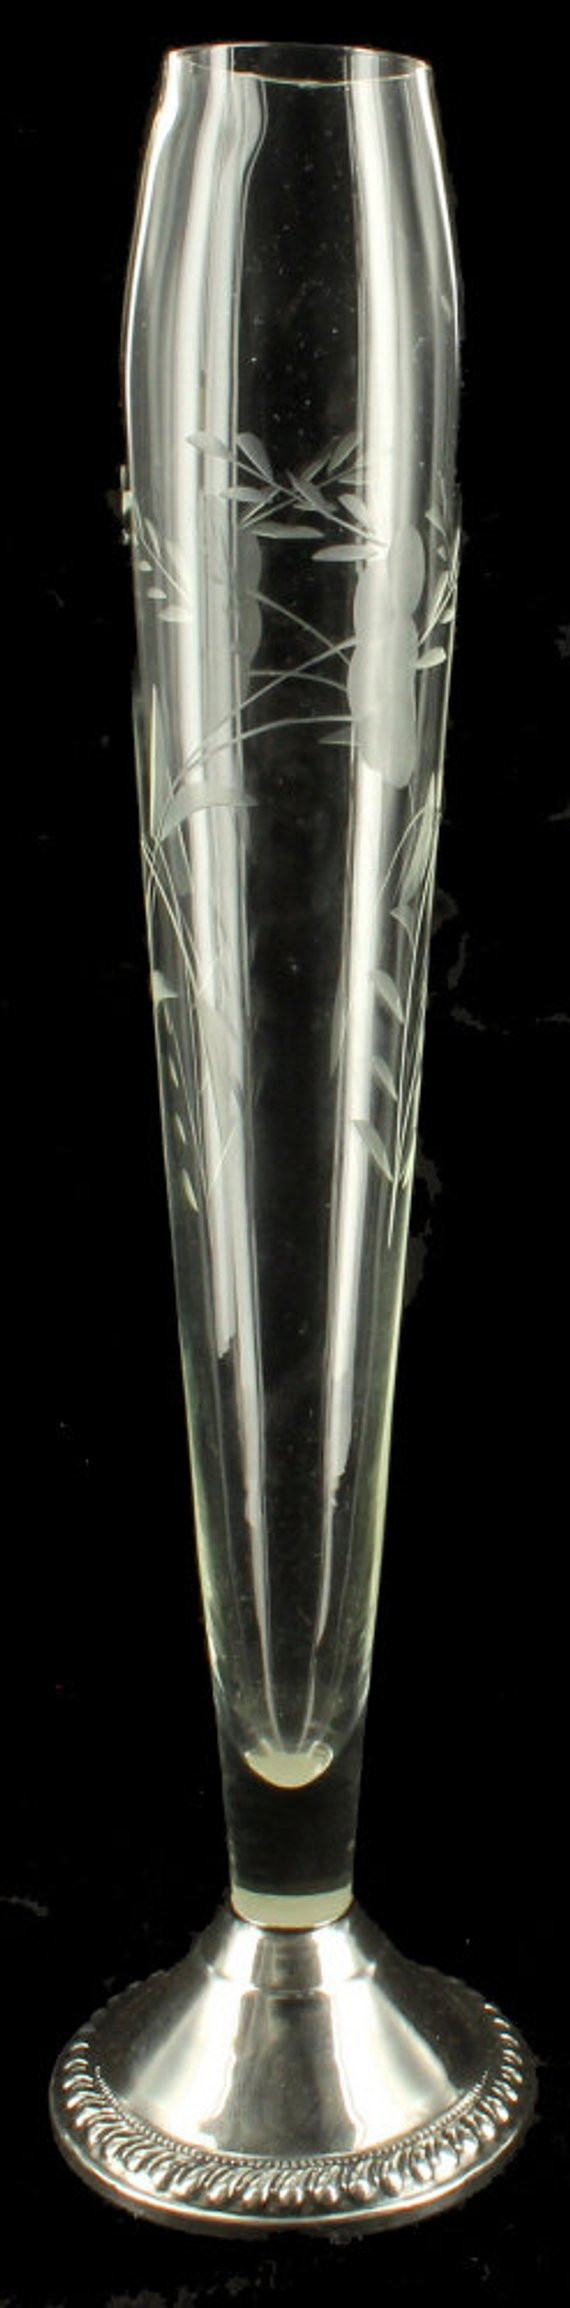 20 Amazing Etched Glass Bud Vase 2024 free download etched glass bud vase of vintage art deco etched glass sterling silver base bud vase etsy inside image 0